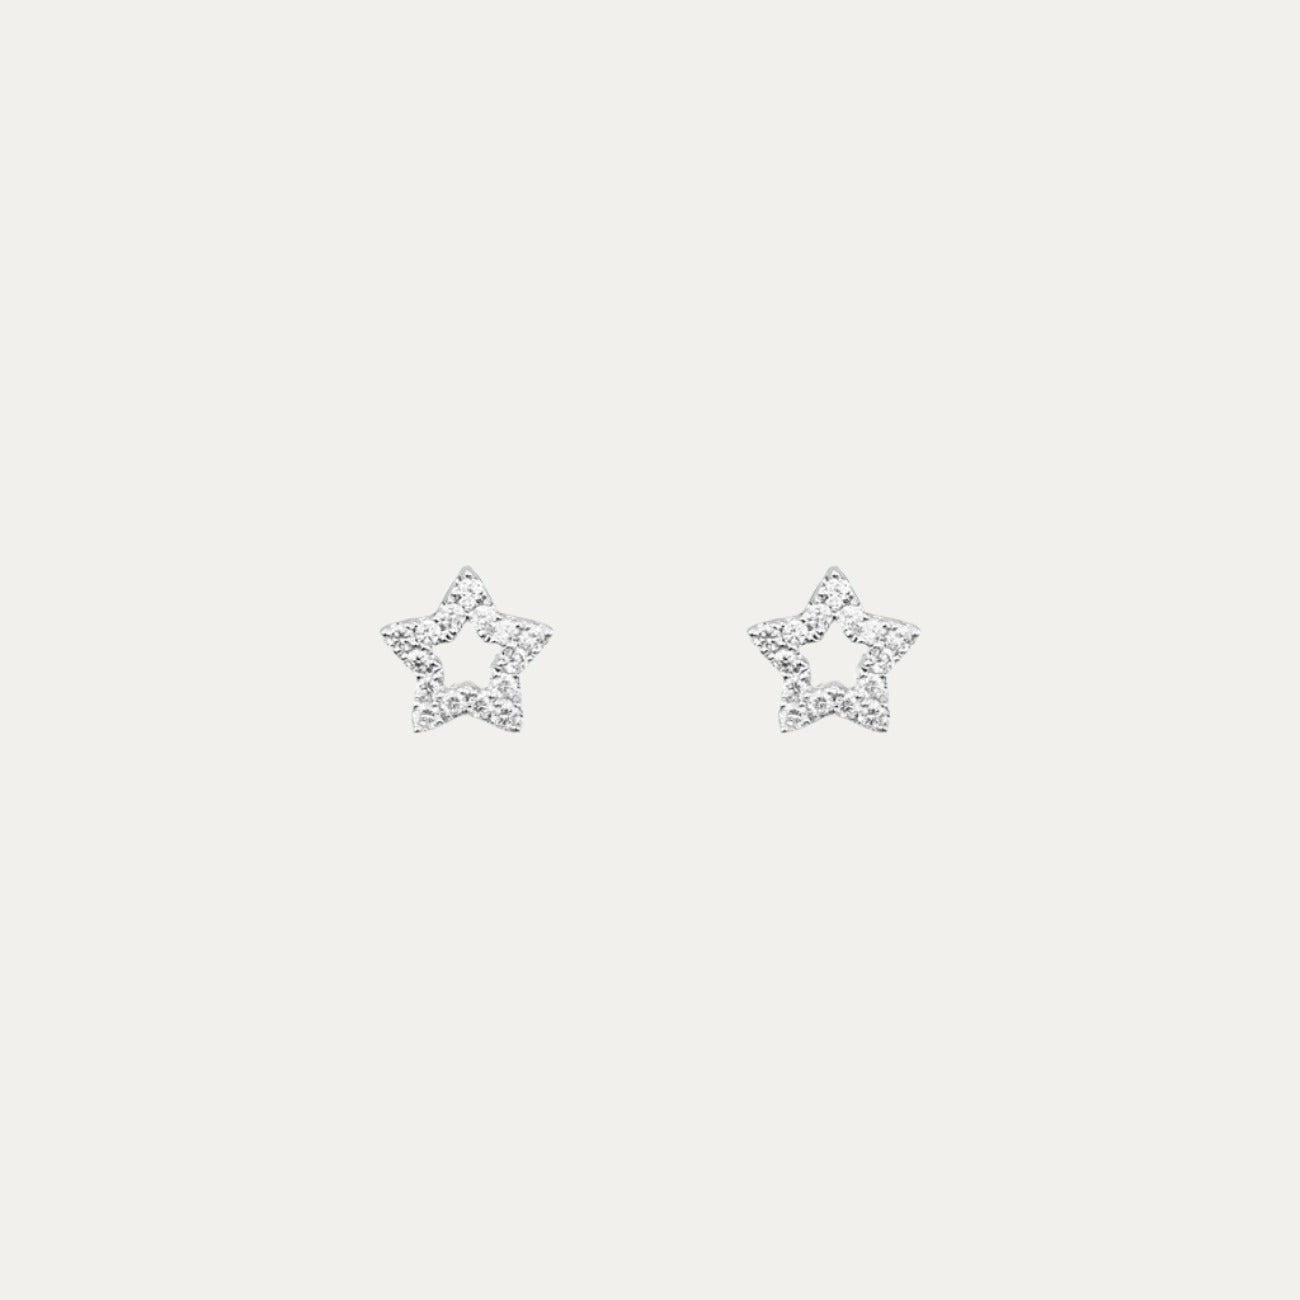 18k White Gold 0.12ct Star Diamond Earrings, Pair